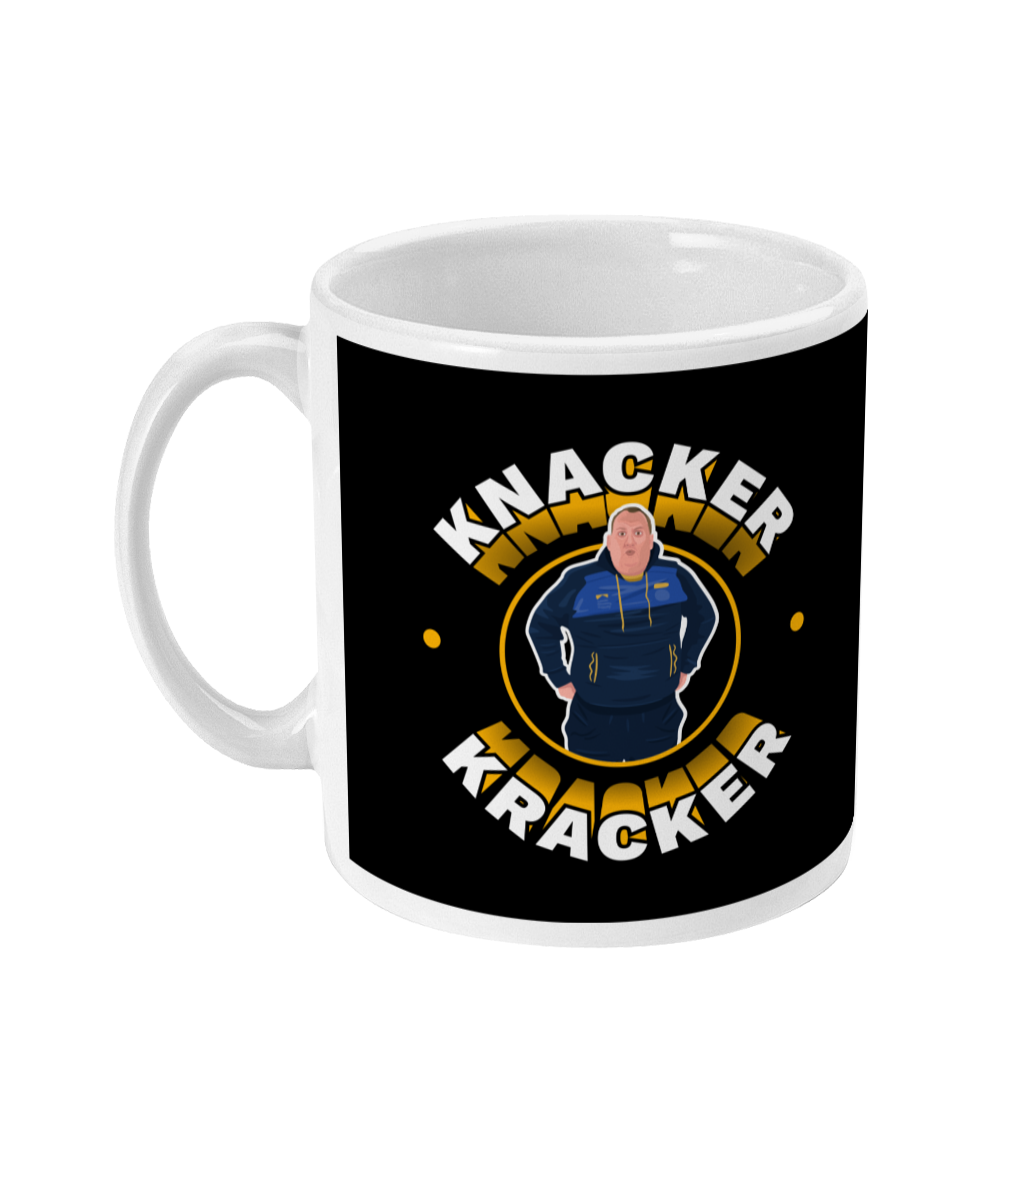 Knacker Kracker Mug